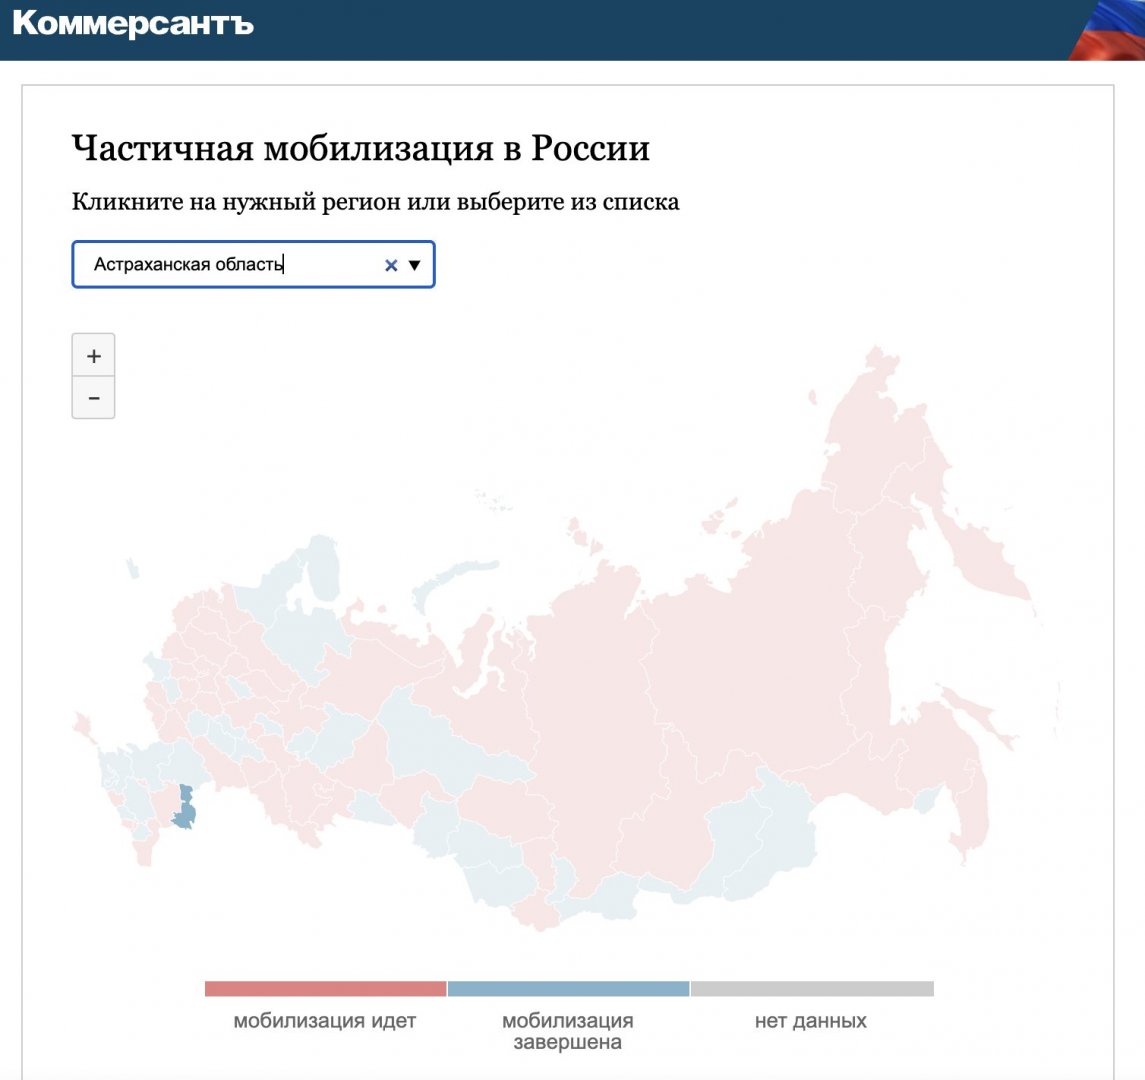 «Коммерсантъ»: Астраханская область завершила частичную мобилизацию